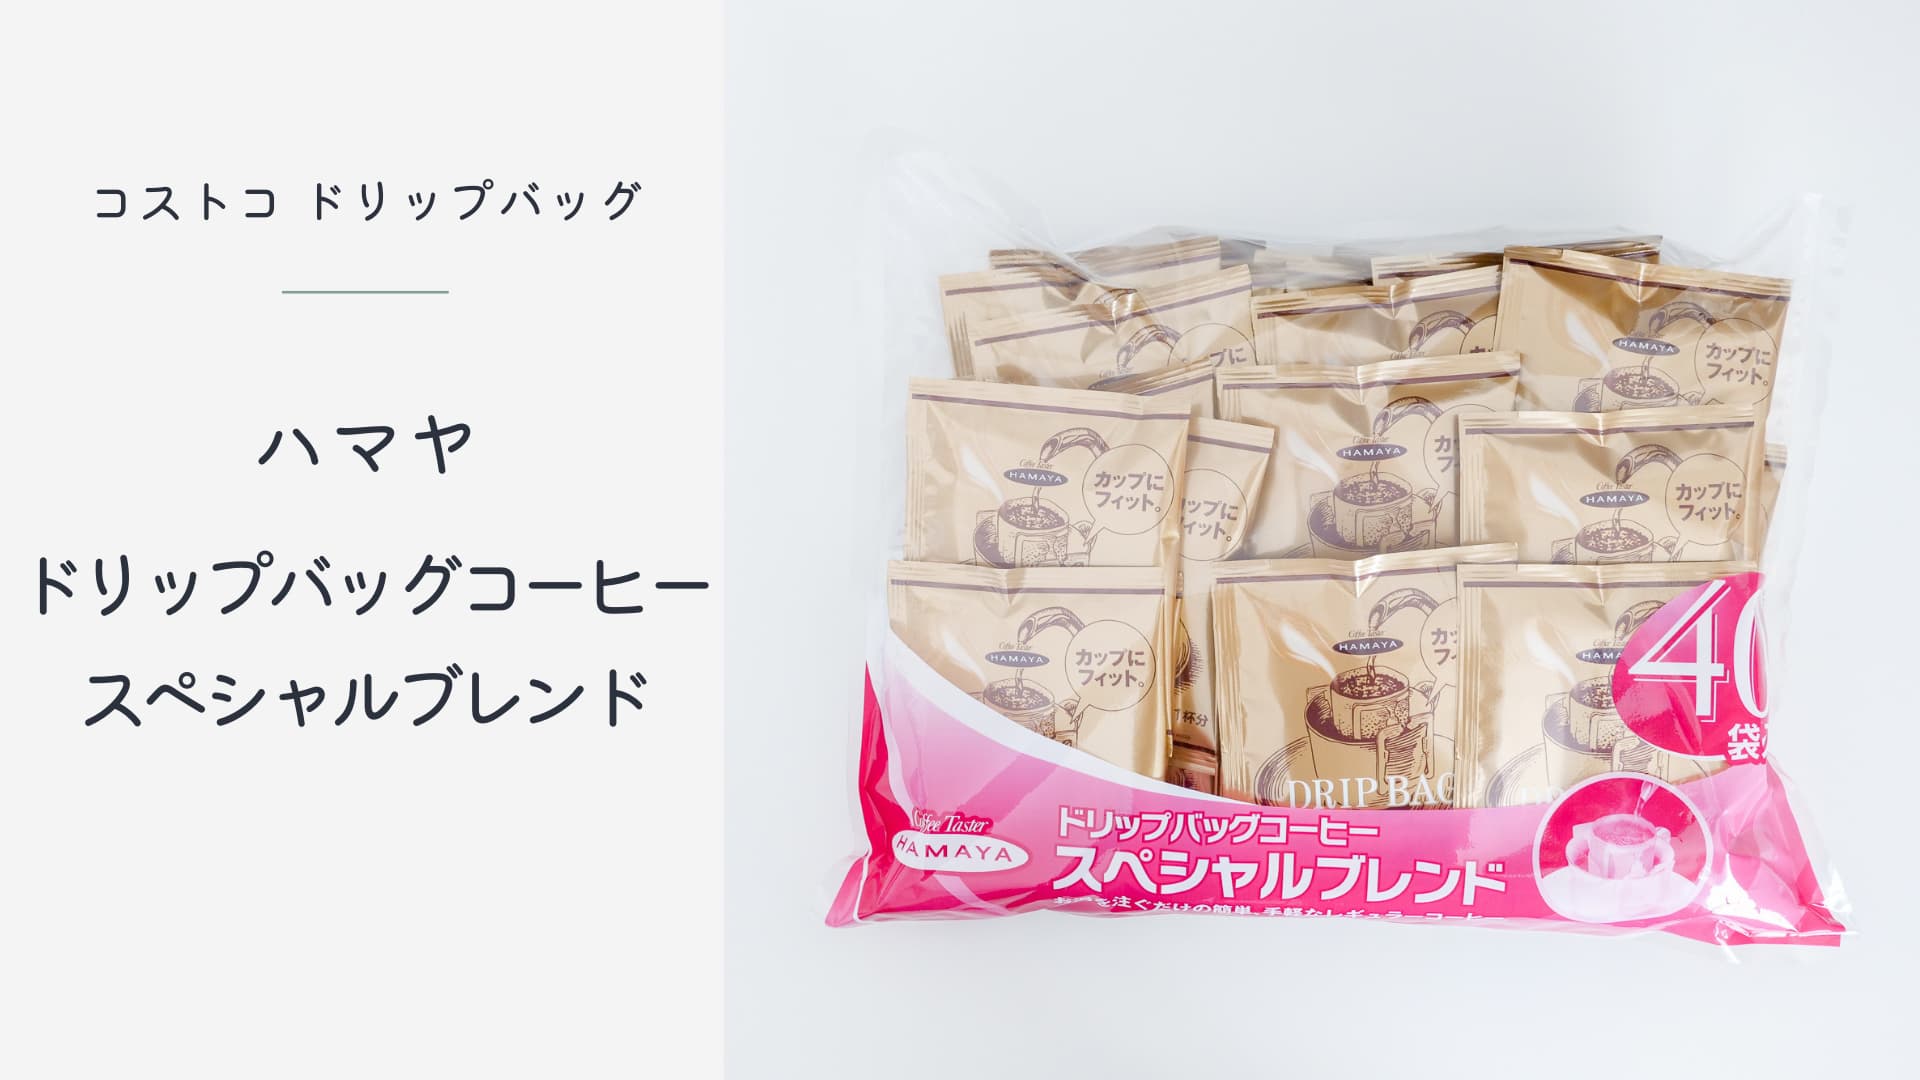 【1袋約30円】コストコのハマヤ ドリップバッグコーヒーはストックしておくと便利！